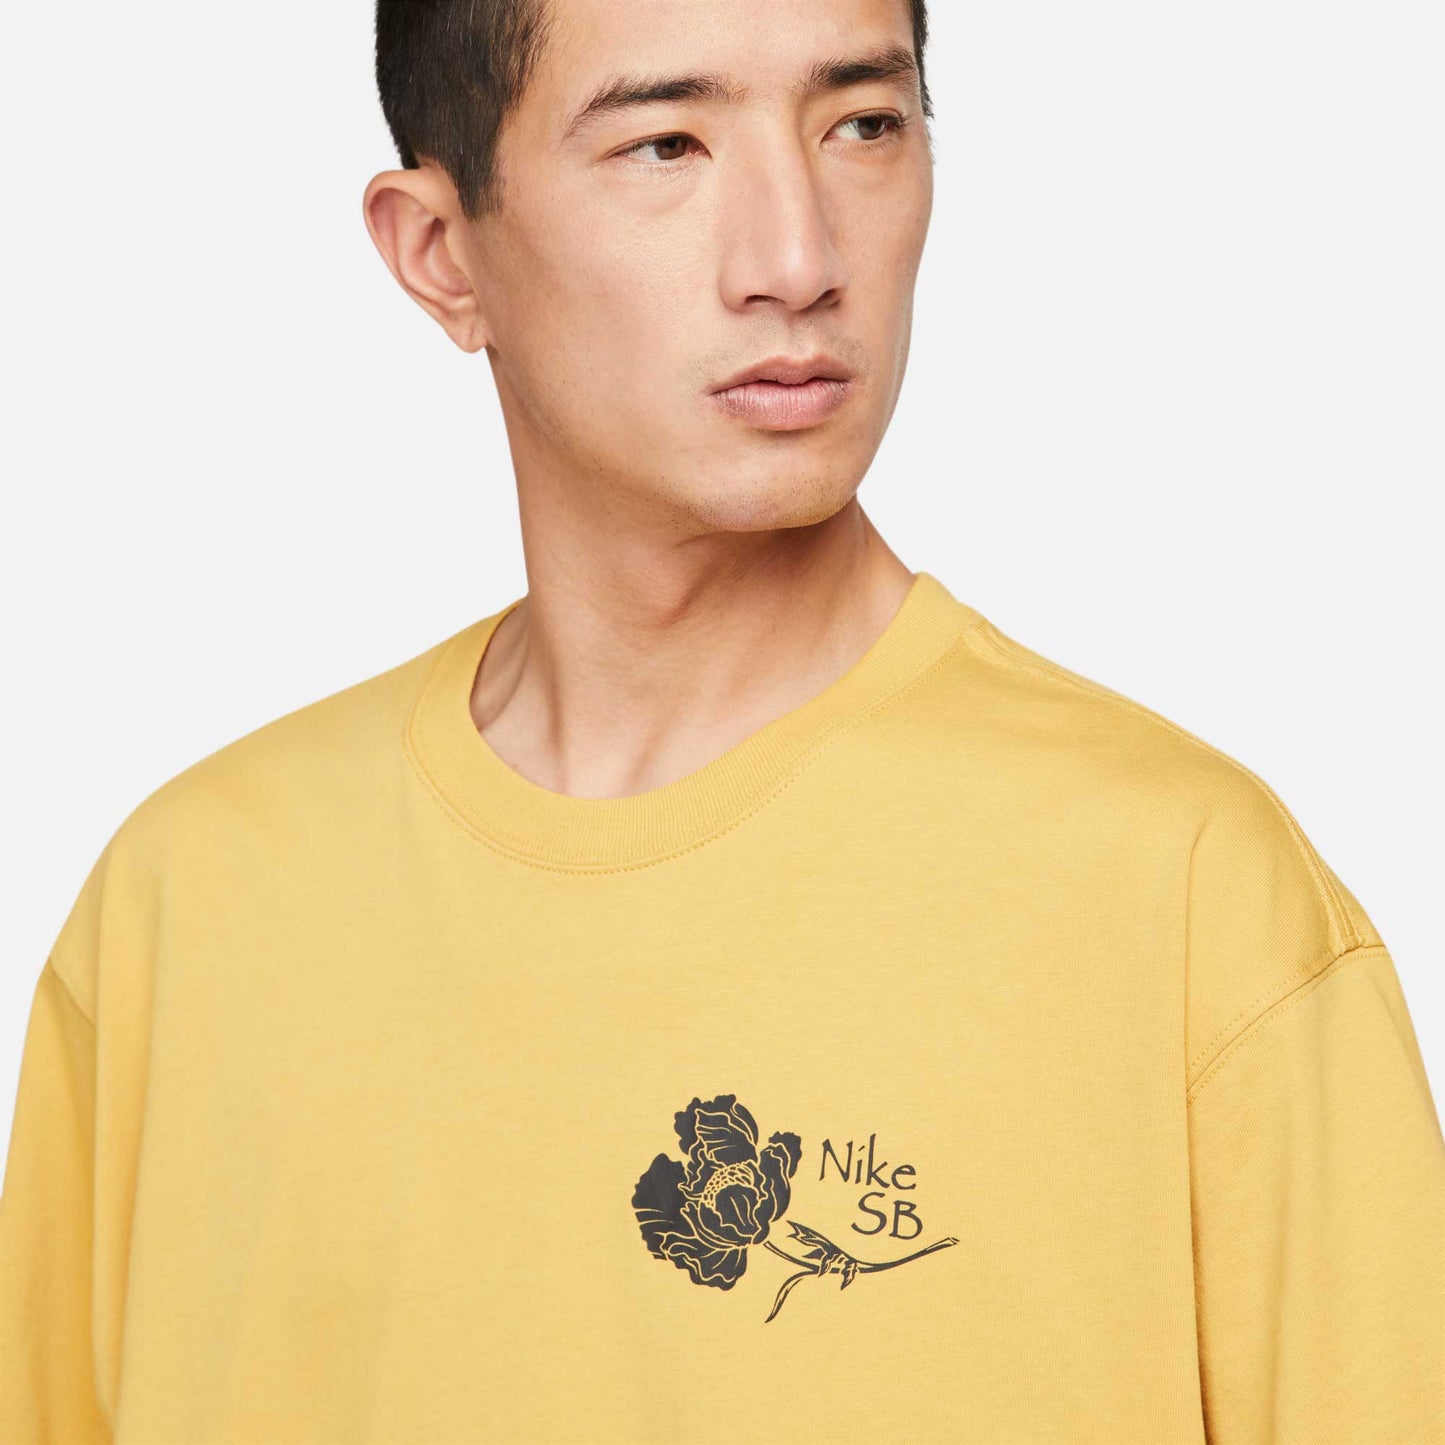 Nike SB Flower Skate T-Shirt, sanded gold - Tiki Room Skateboards - 2